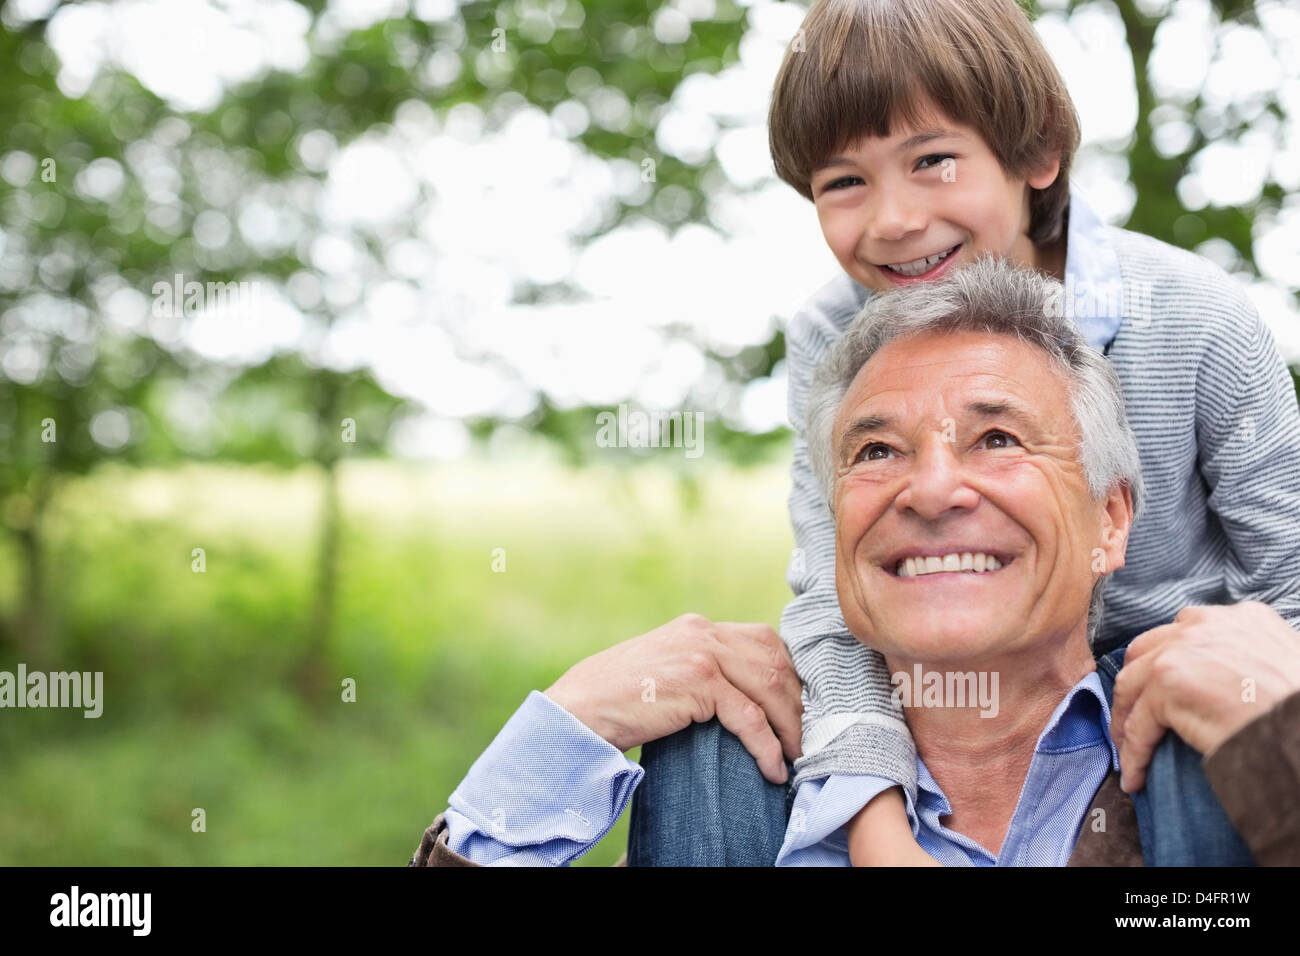 Mann, der Enkel auf seinen Schultern trägt Stockfoto